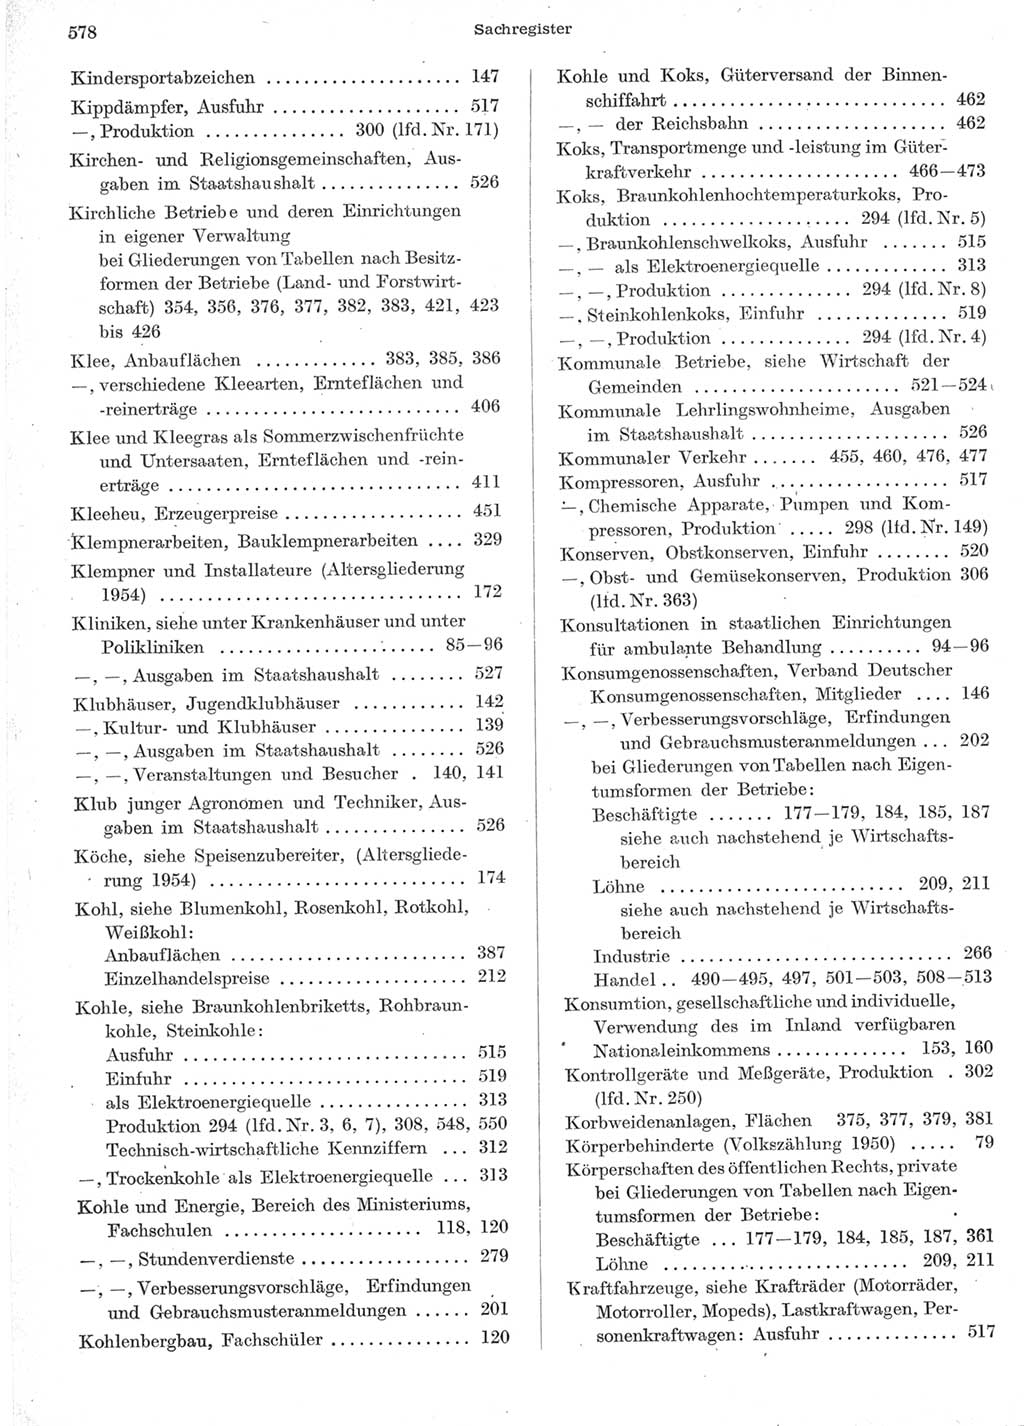 Statistisches Jahrbuch der Deutschen Demokratischen Republik (DDR) 1957, Seite 578 (Stat. Jb. DDR 1957, S. 578)